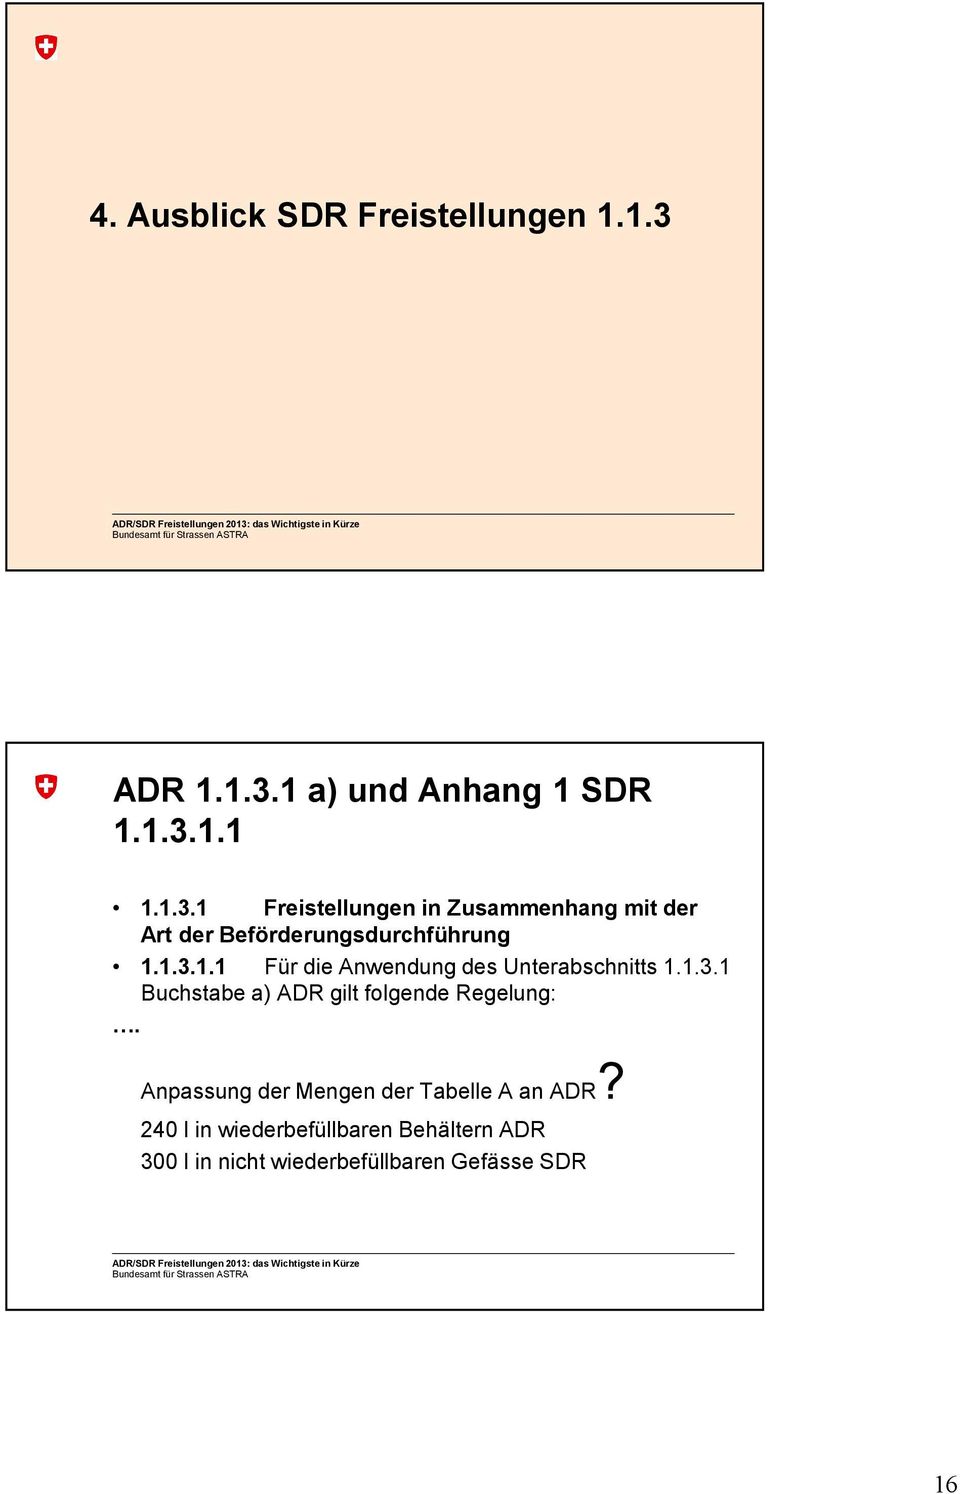 1.3.1.1 Für die Anwendung des Unterabschnitts 1.1.3.1 Buchstabe a) ADR gilt folgende Regelung:.